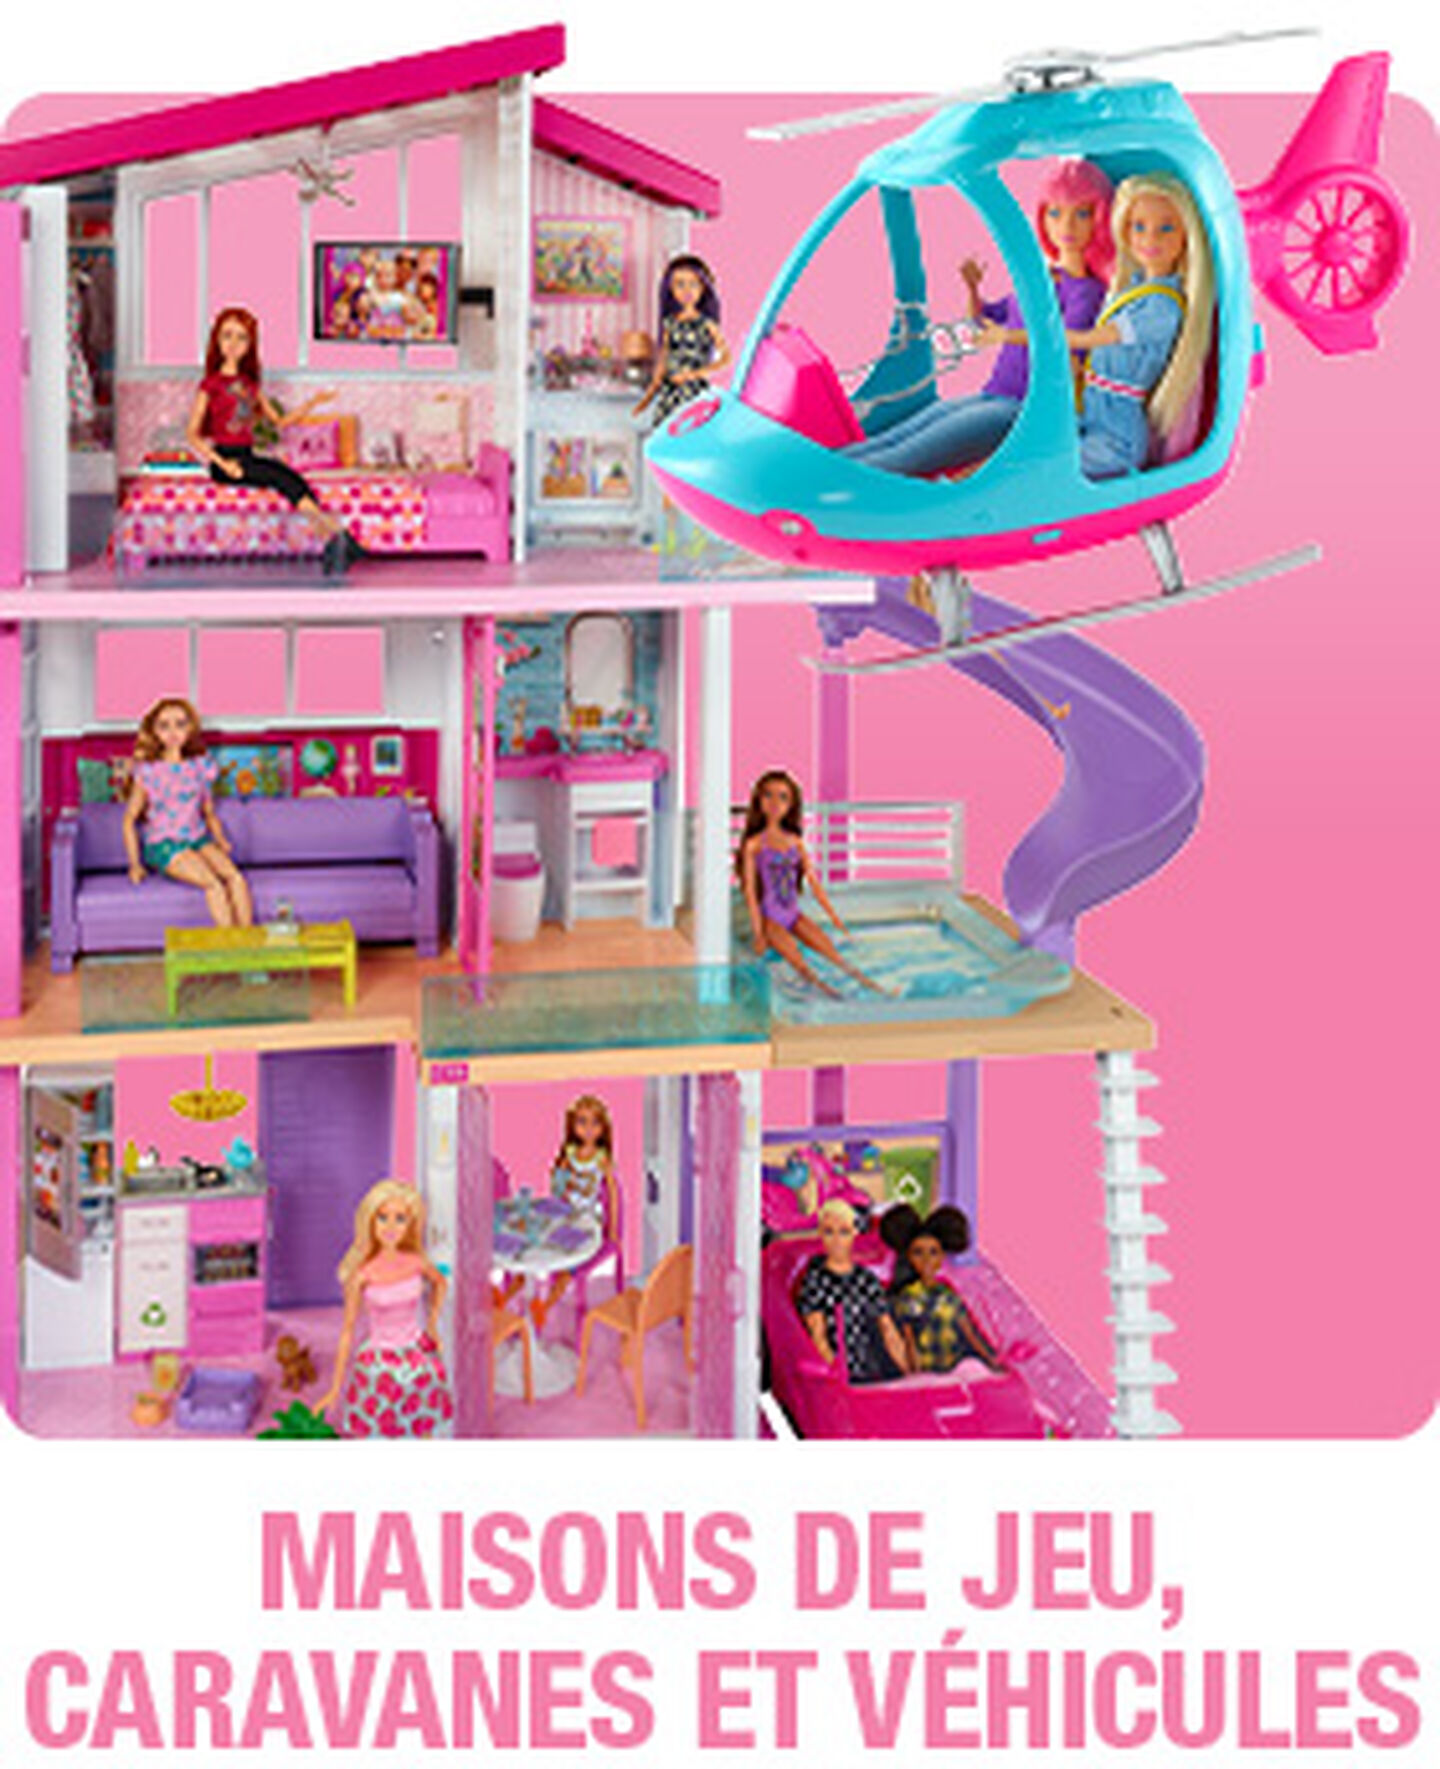 Maison, voitures et caravanes Barbie